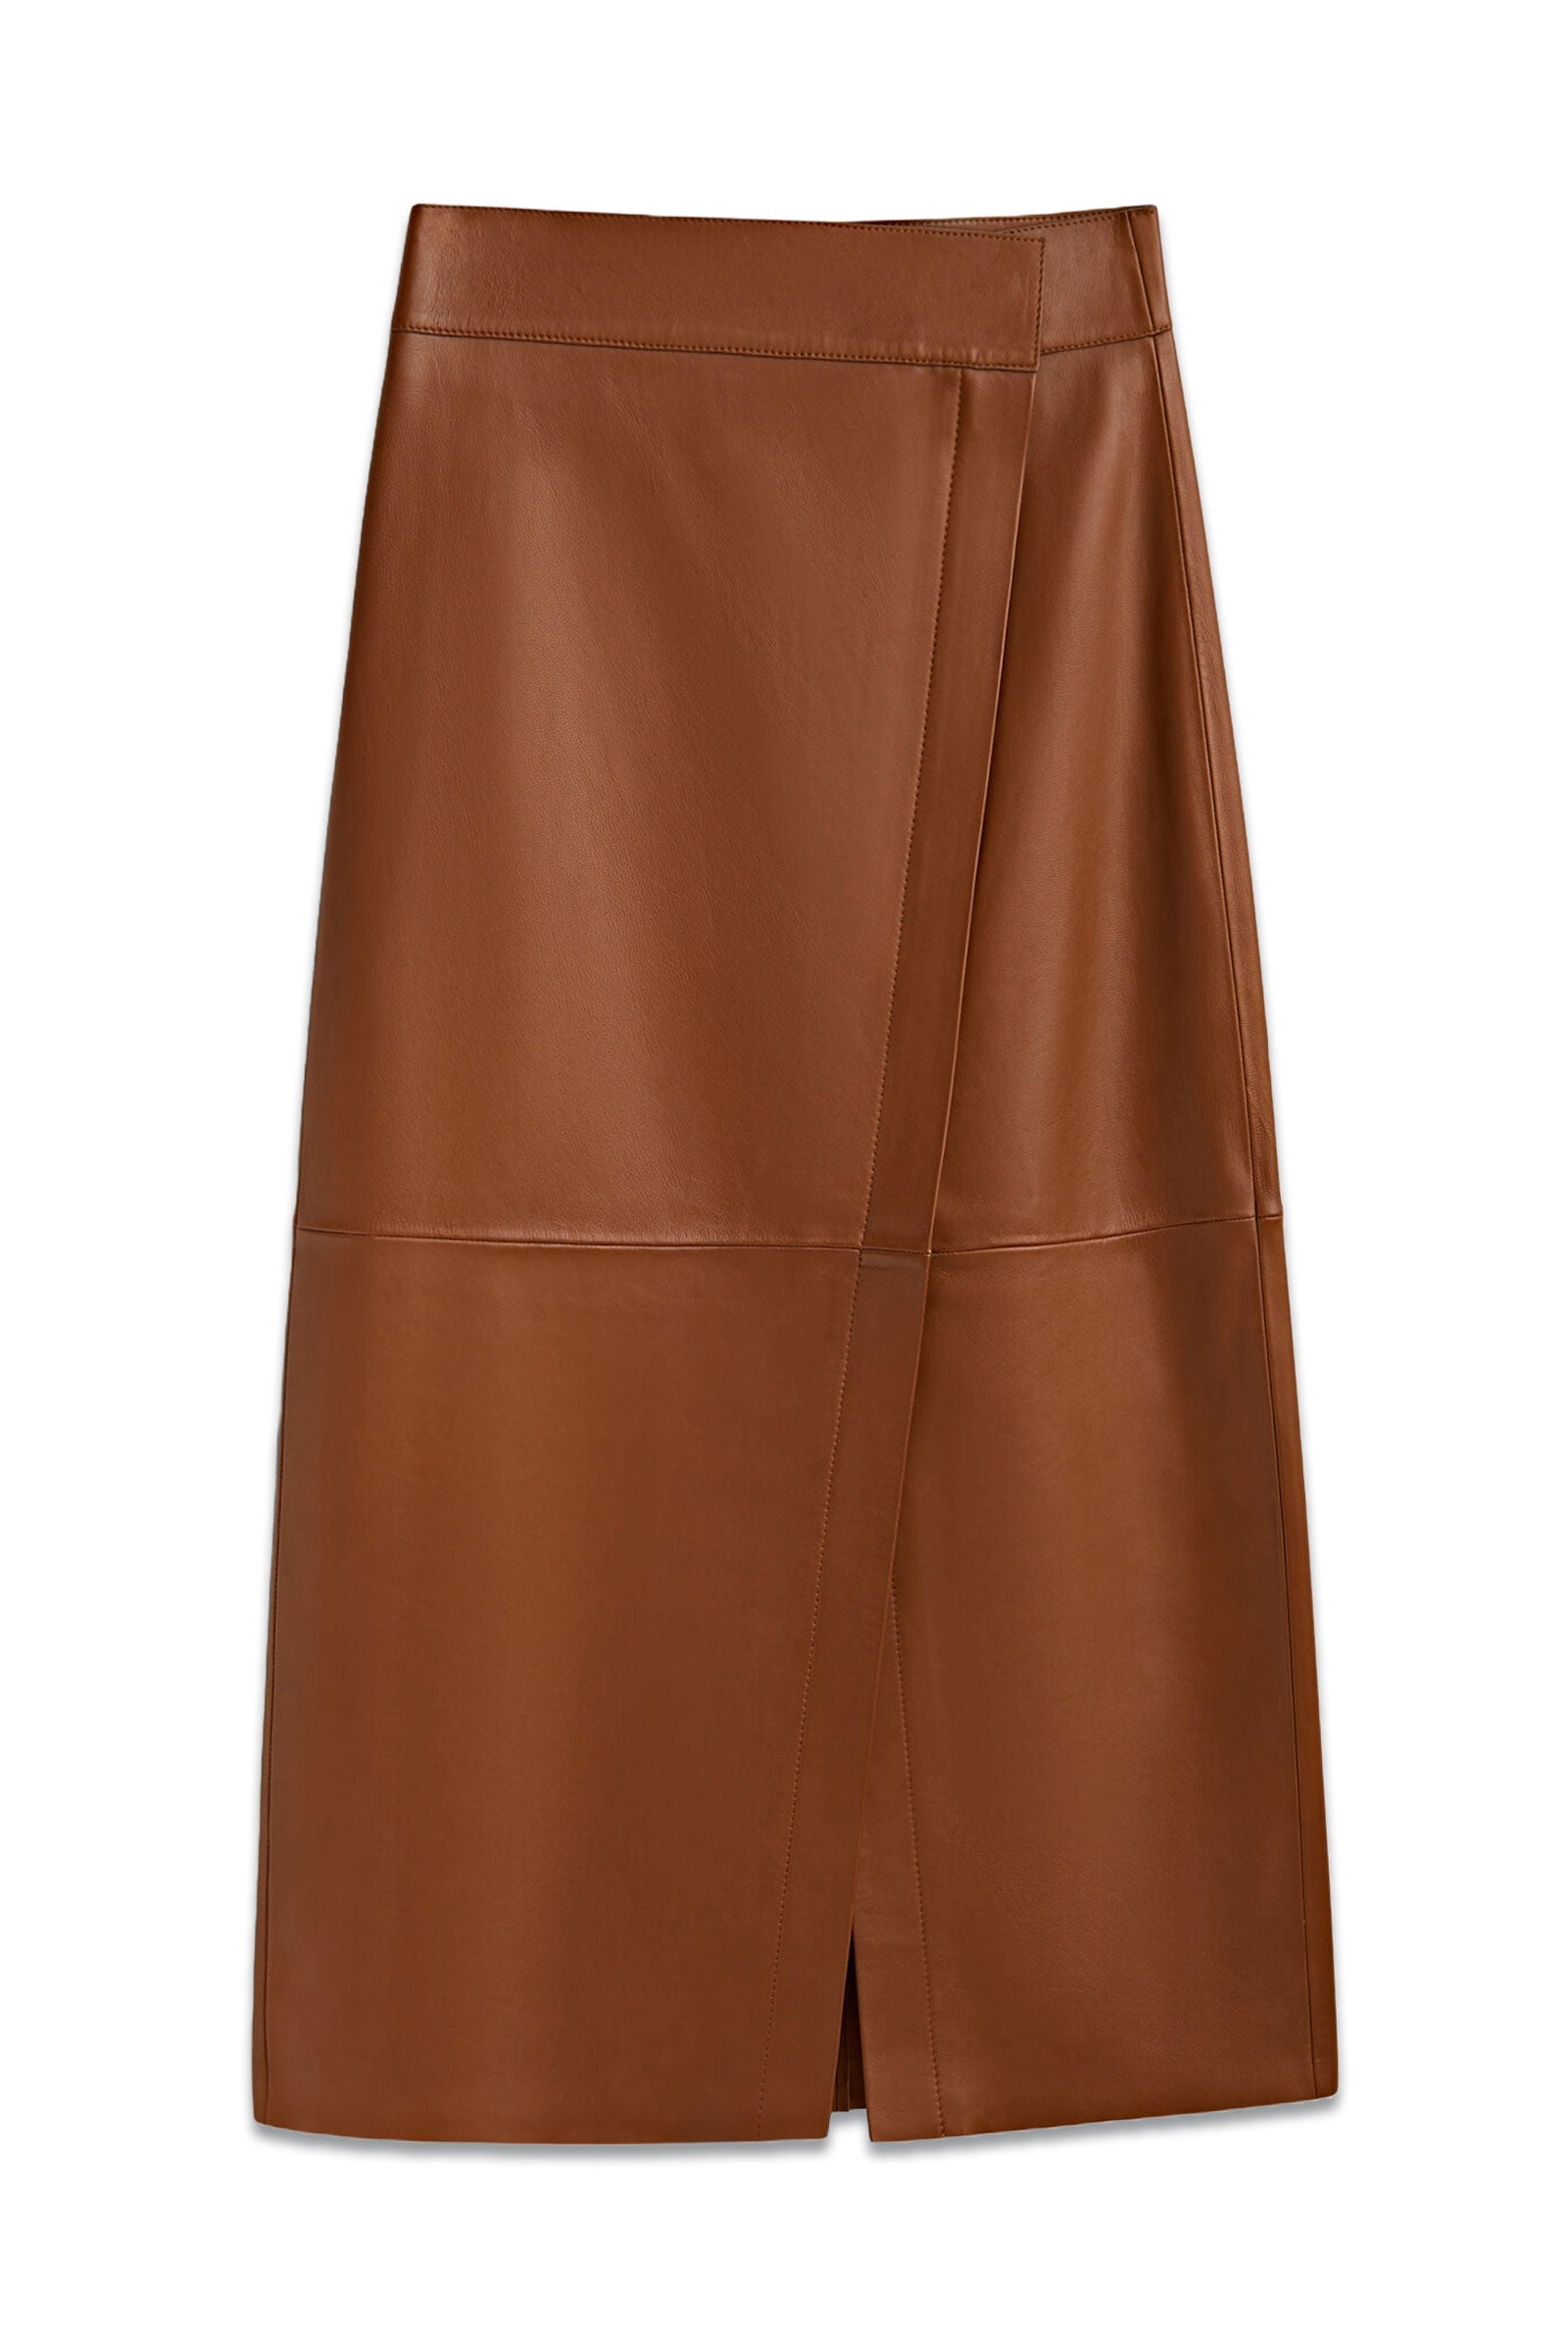 Black Fringe Trim Pencil Skirt – Mint Velvet